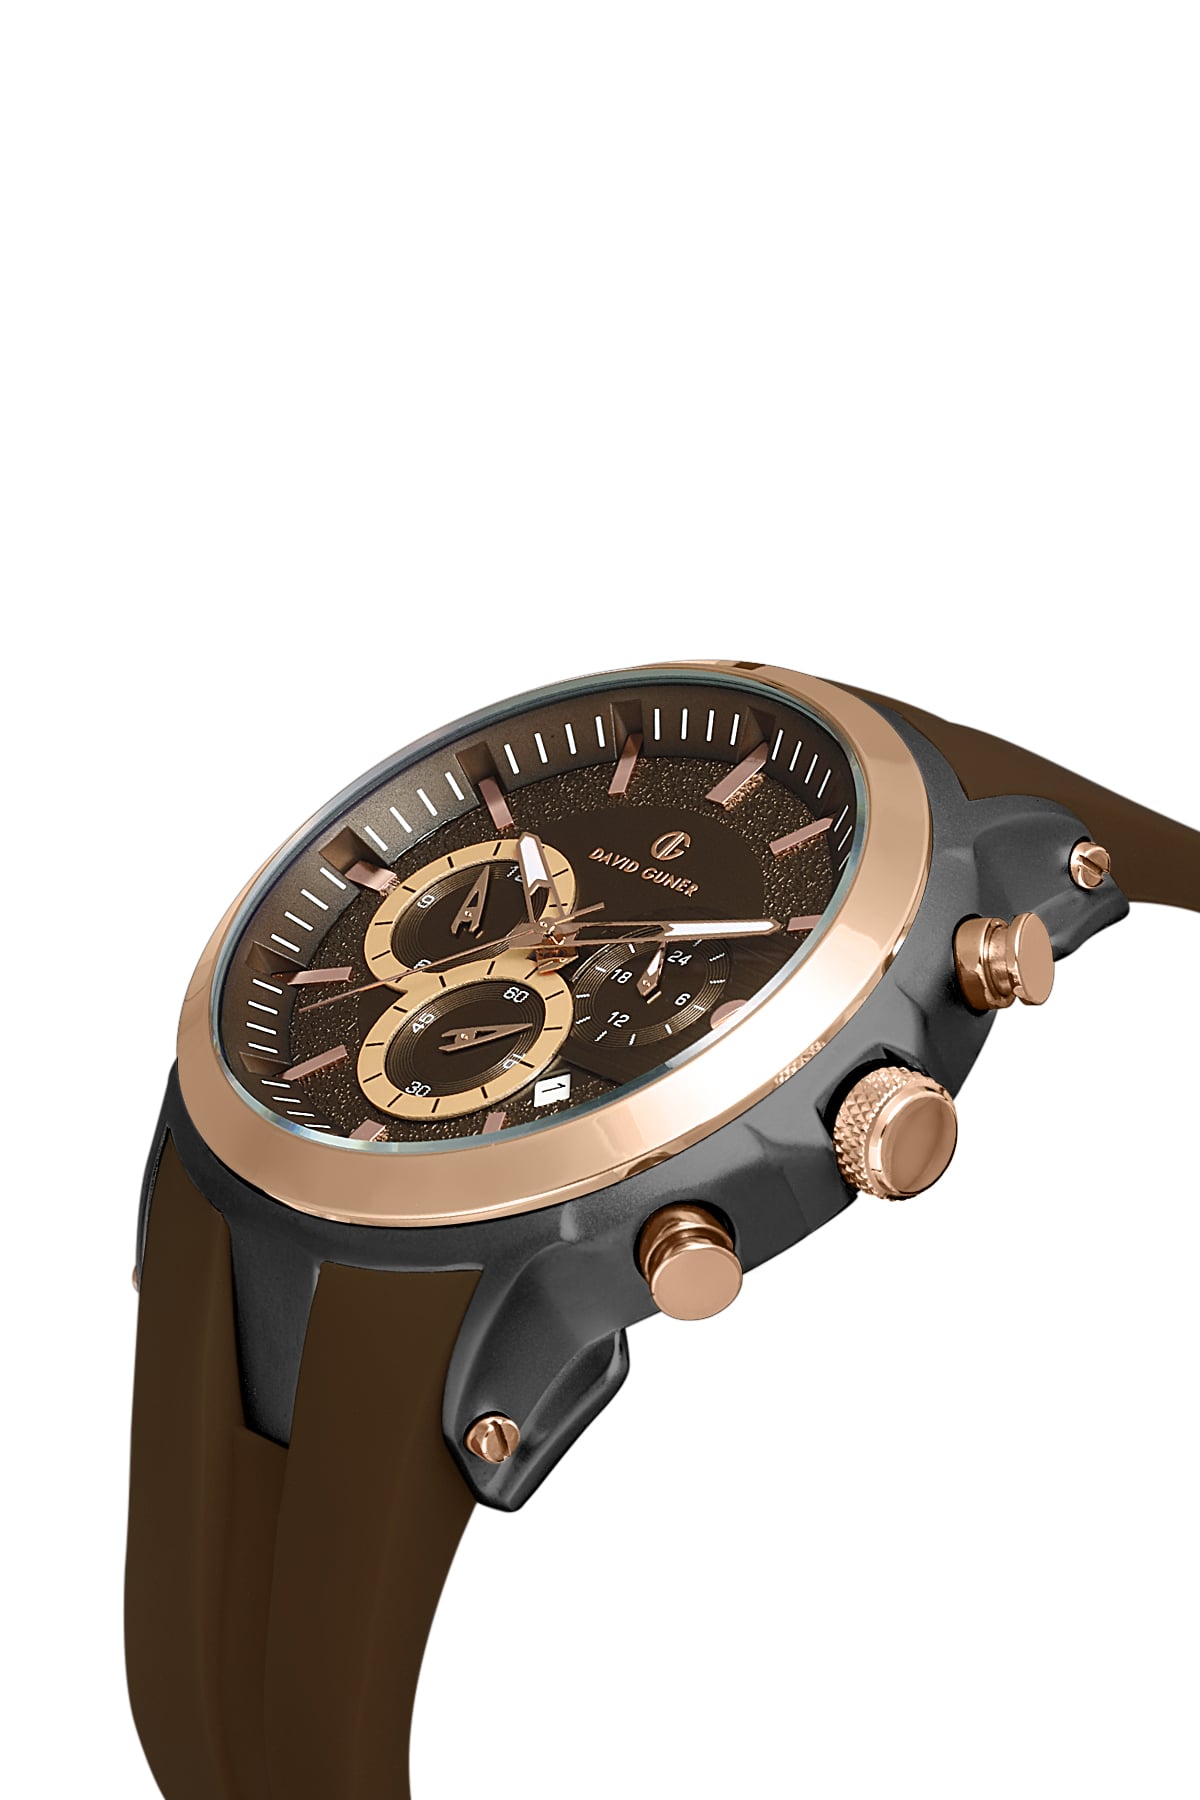 David Guner Black Dial Multi Function Men's Wristwatch